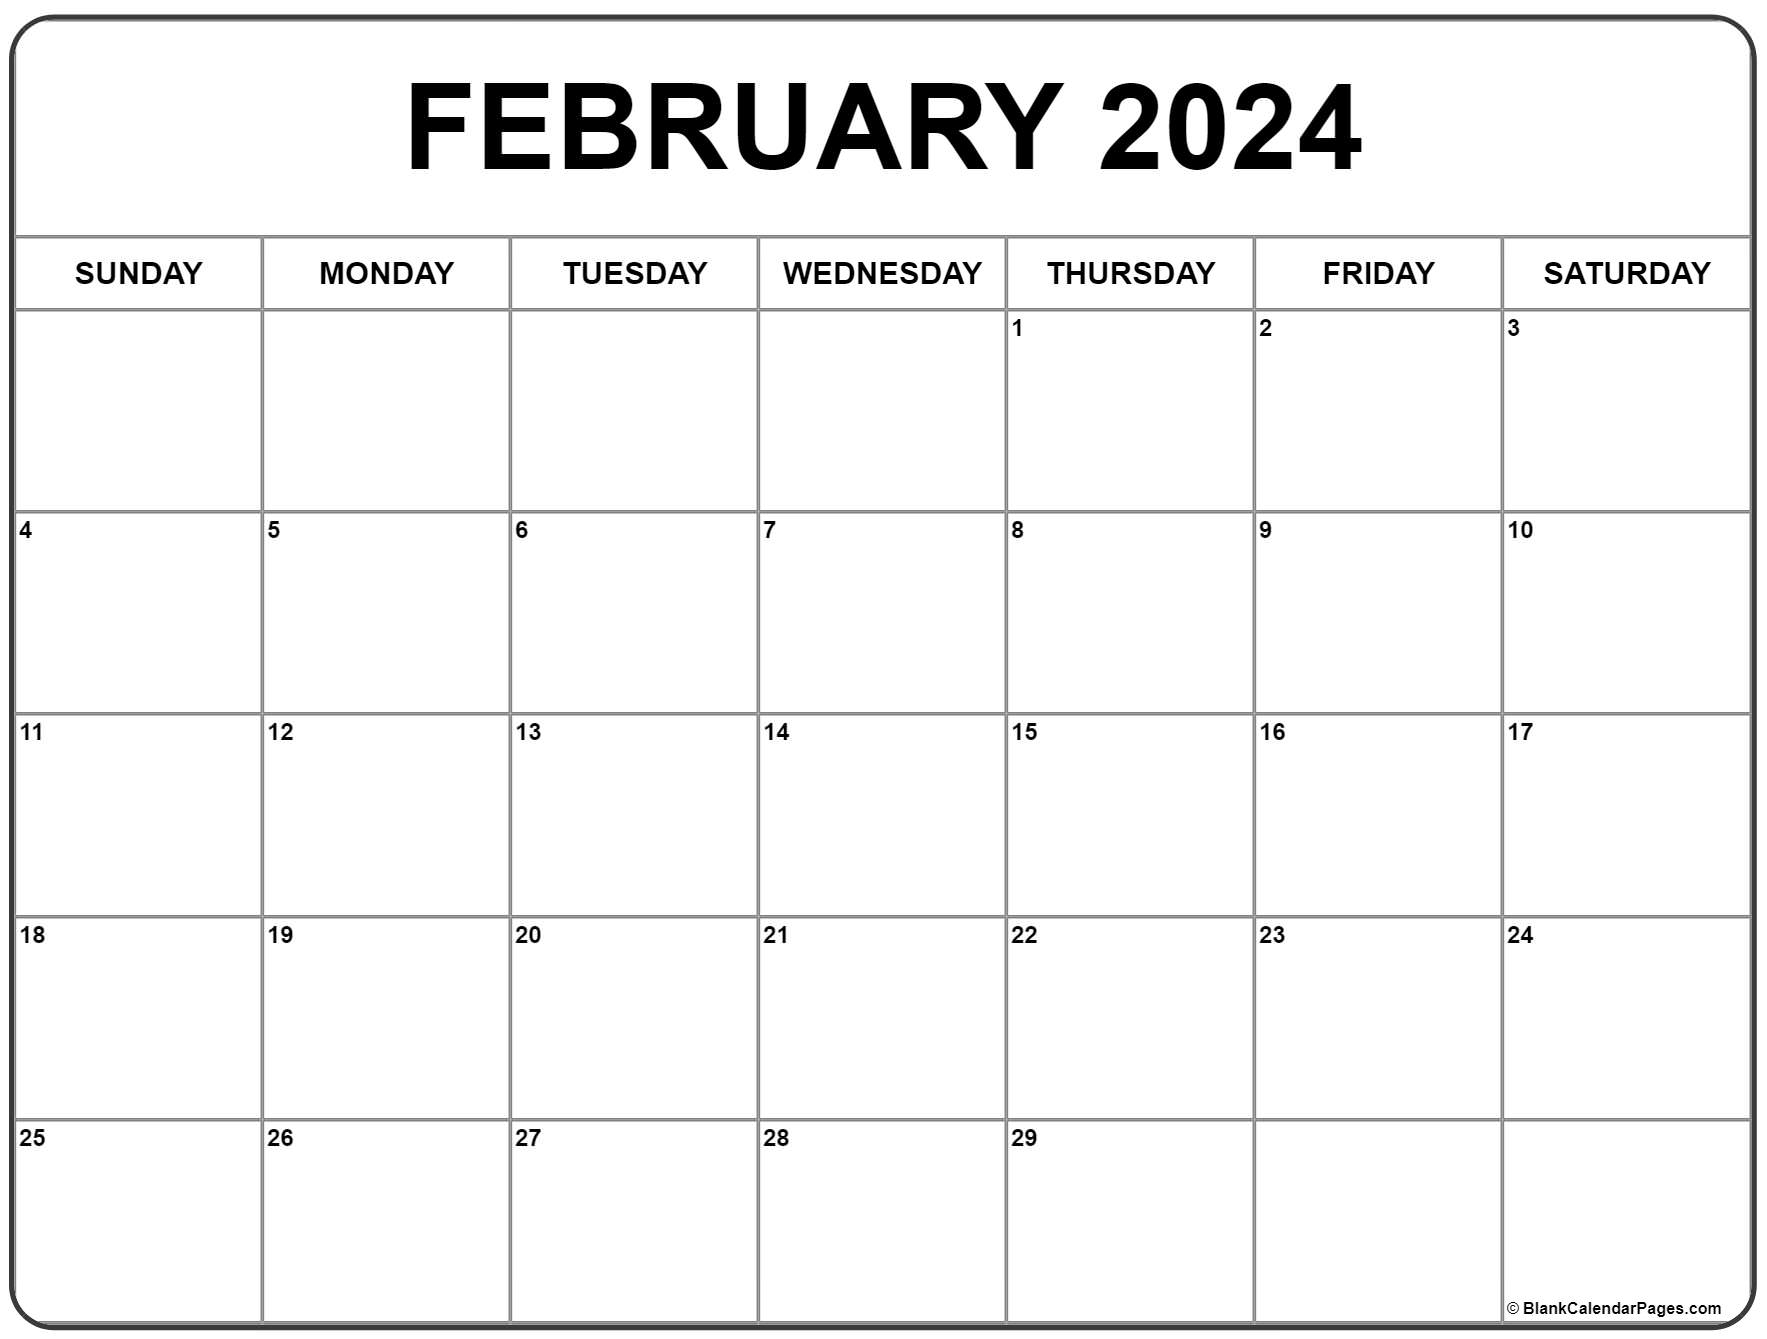 February 2024 Calendar | Free Printable Calendar for February Calendar Printable 2024